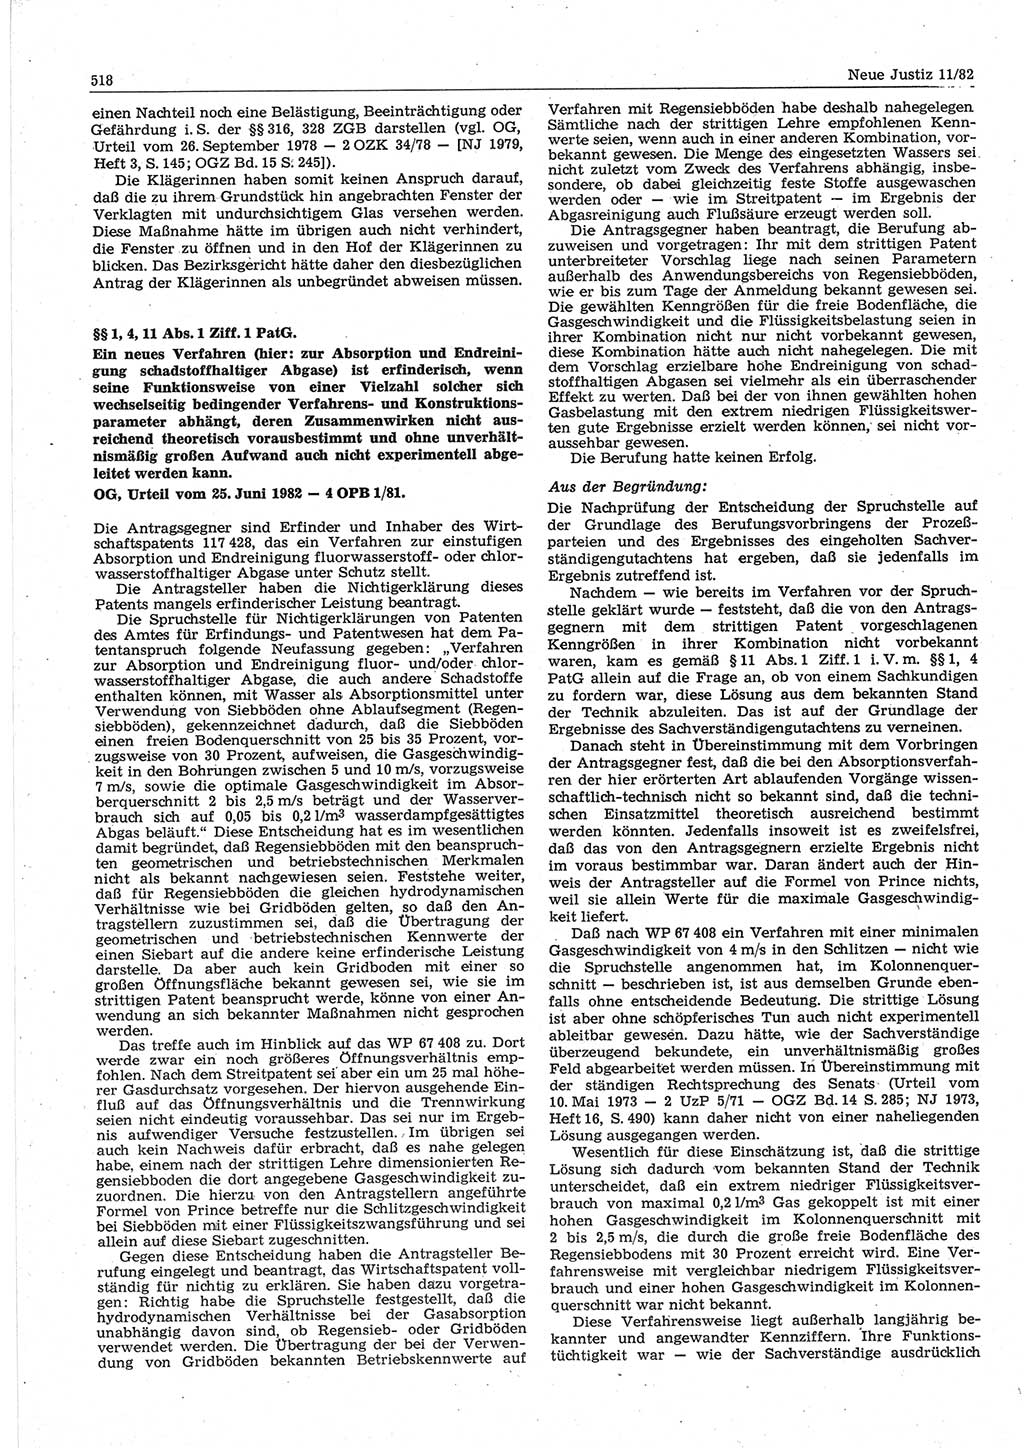 Neue Justiz (NJ), Zeitschrift für sozialistisches Recht und Gesetzlichkeit [Deutsche Demokratische Republik (DDR)], 36. Jahrgang 1982, Seite 518 (NJ DDR 1982, S. 518)